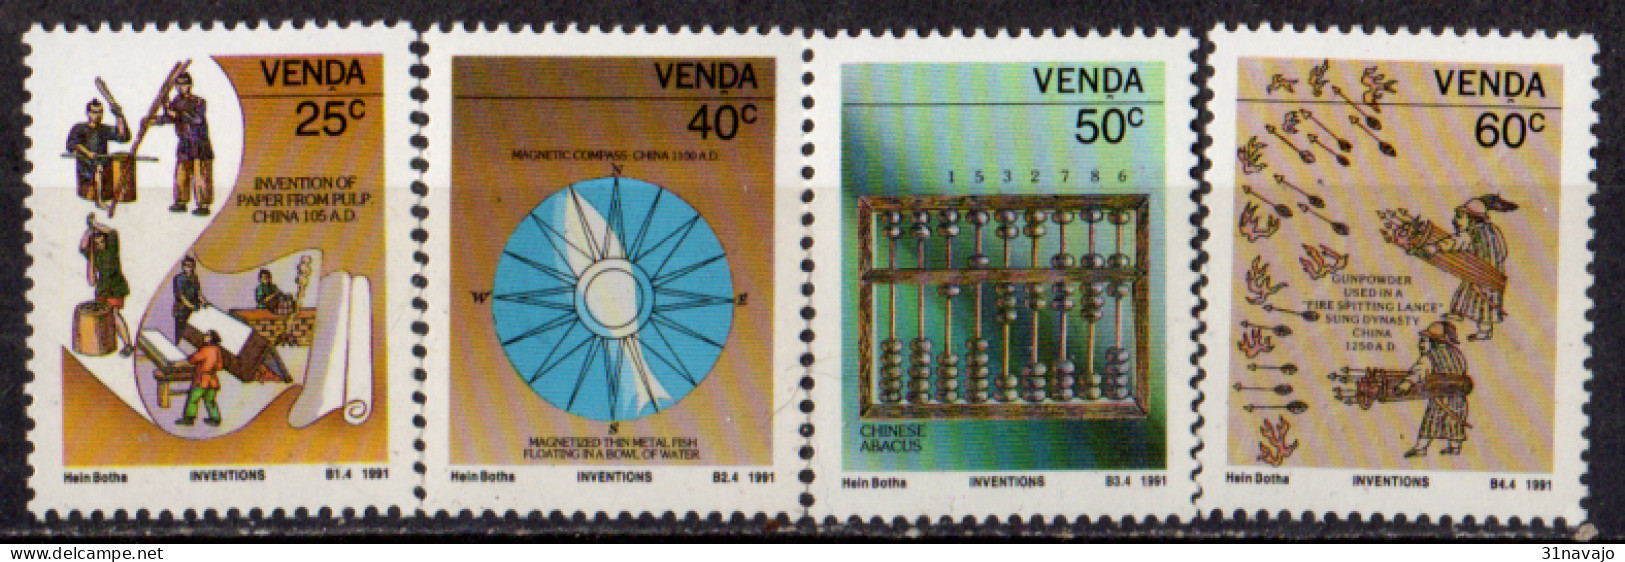 VENDA - Grandes Inventions 1992 - Venda